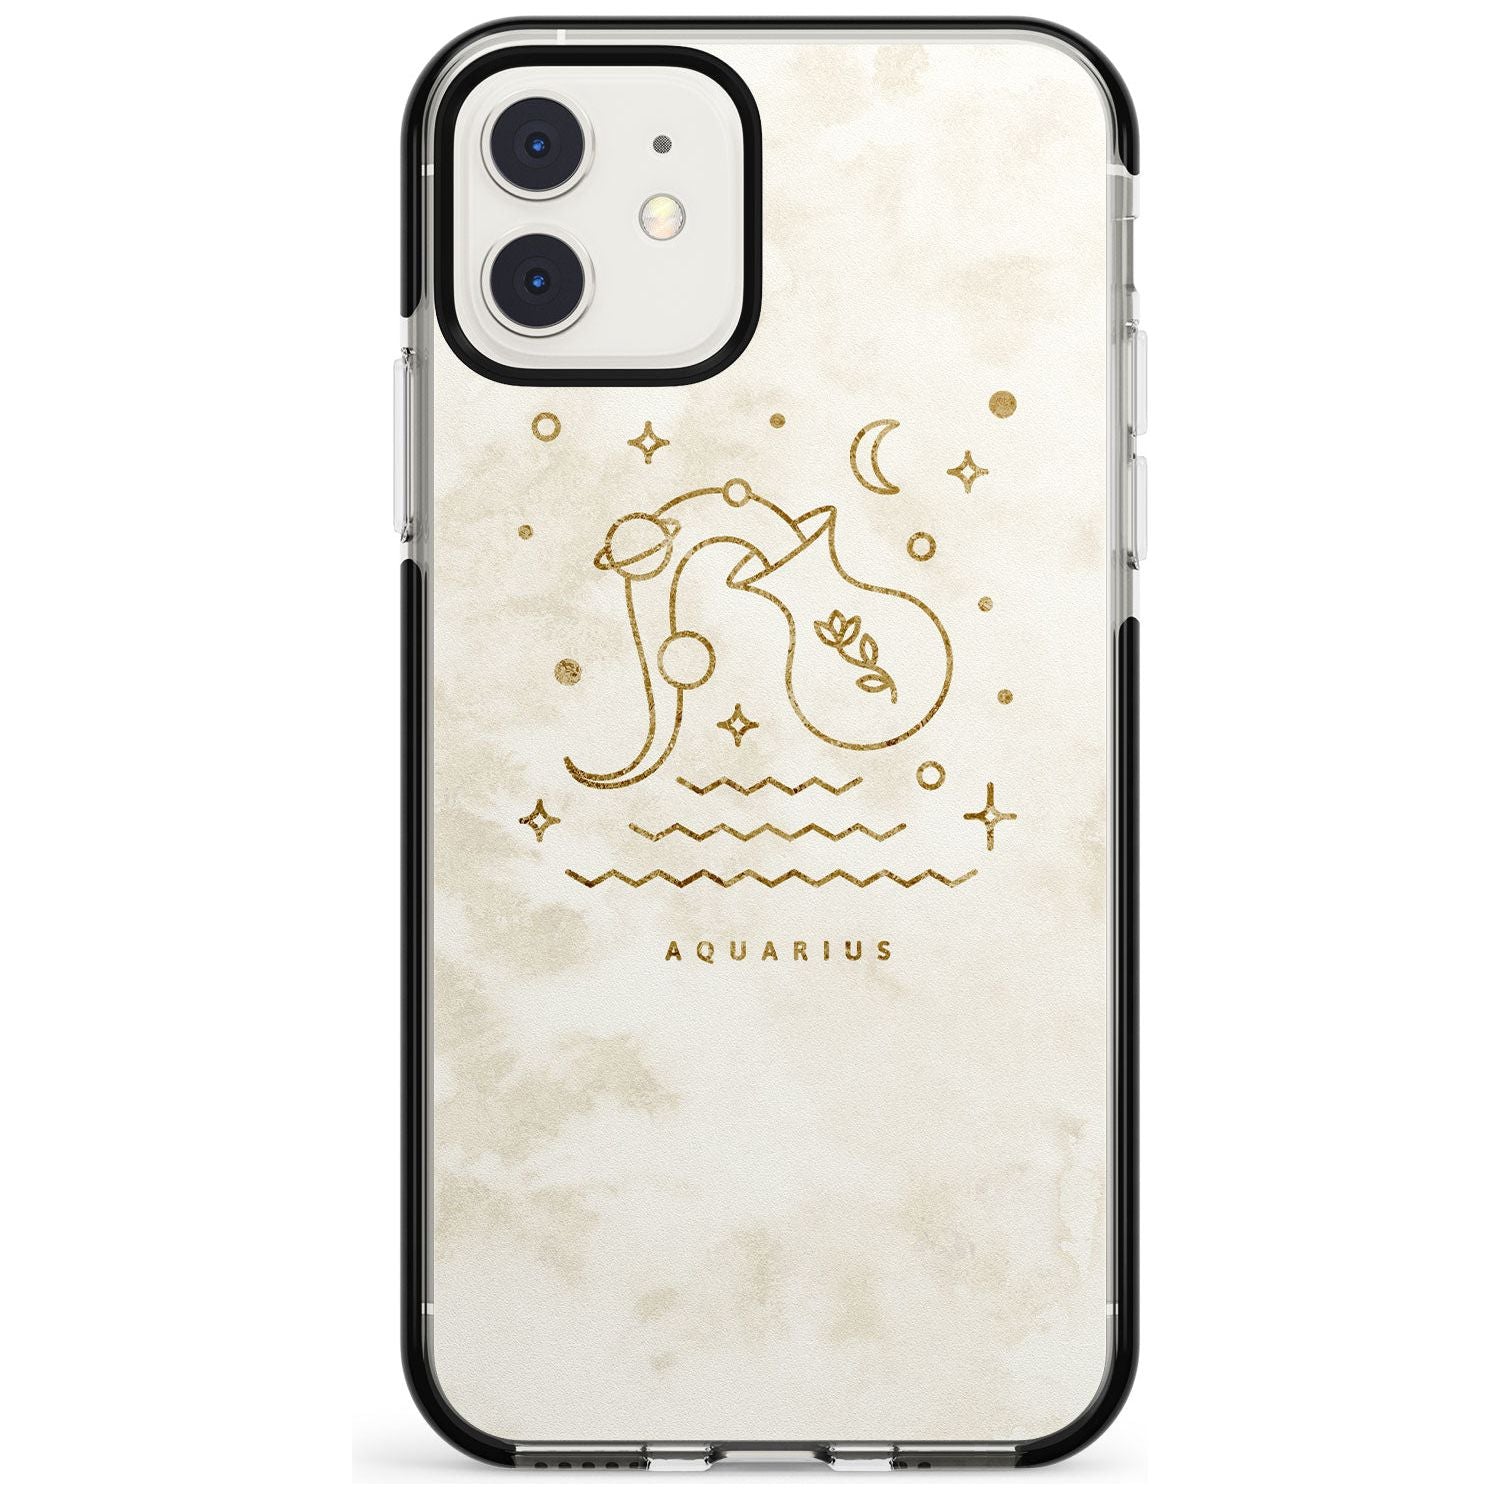 Aquarius Emblem - Solid Gold Marbled Design Black Impact Phone Case for iPhone 11